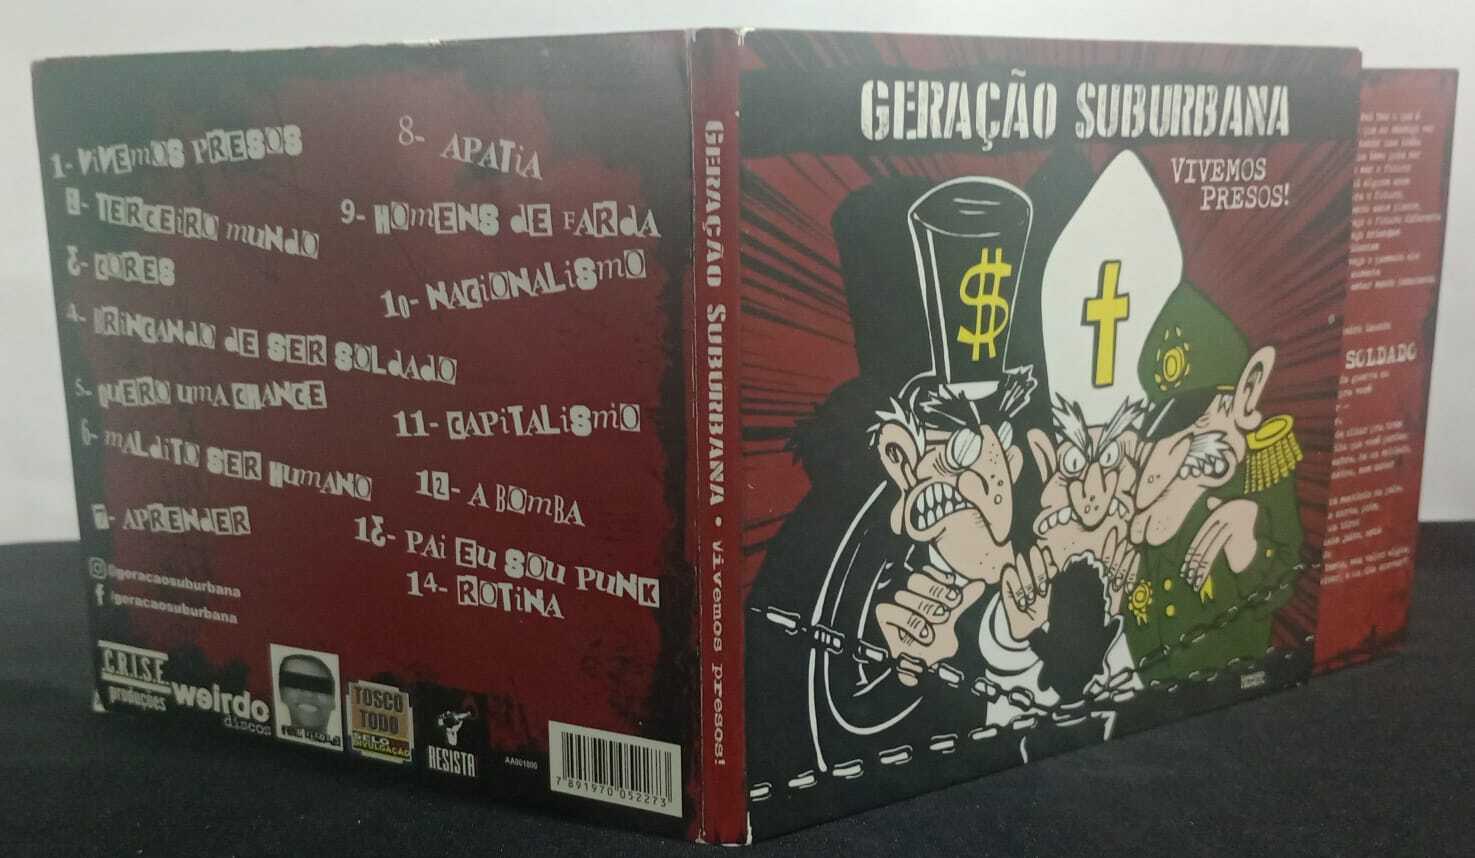 CD - Geração Suburbana - Vivemos Presos (Digipack)